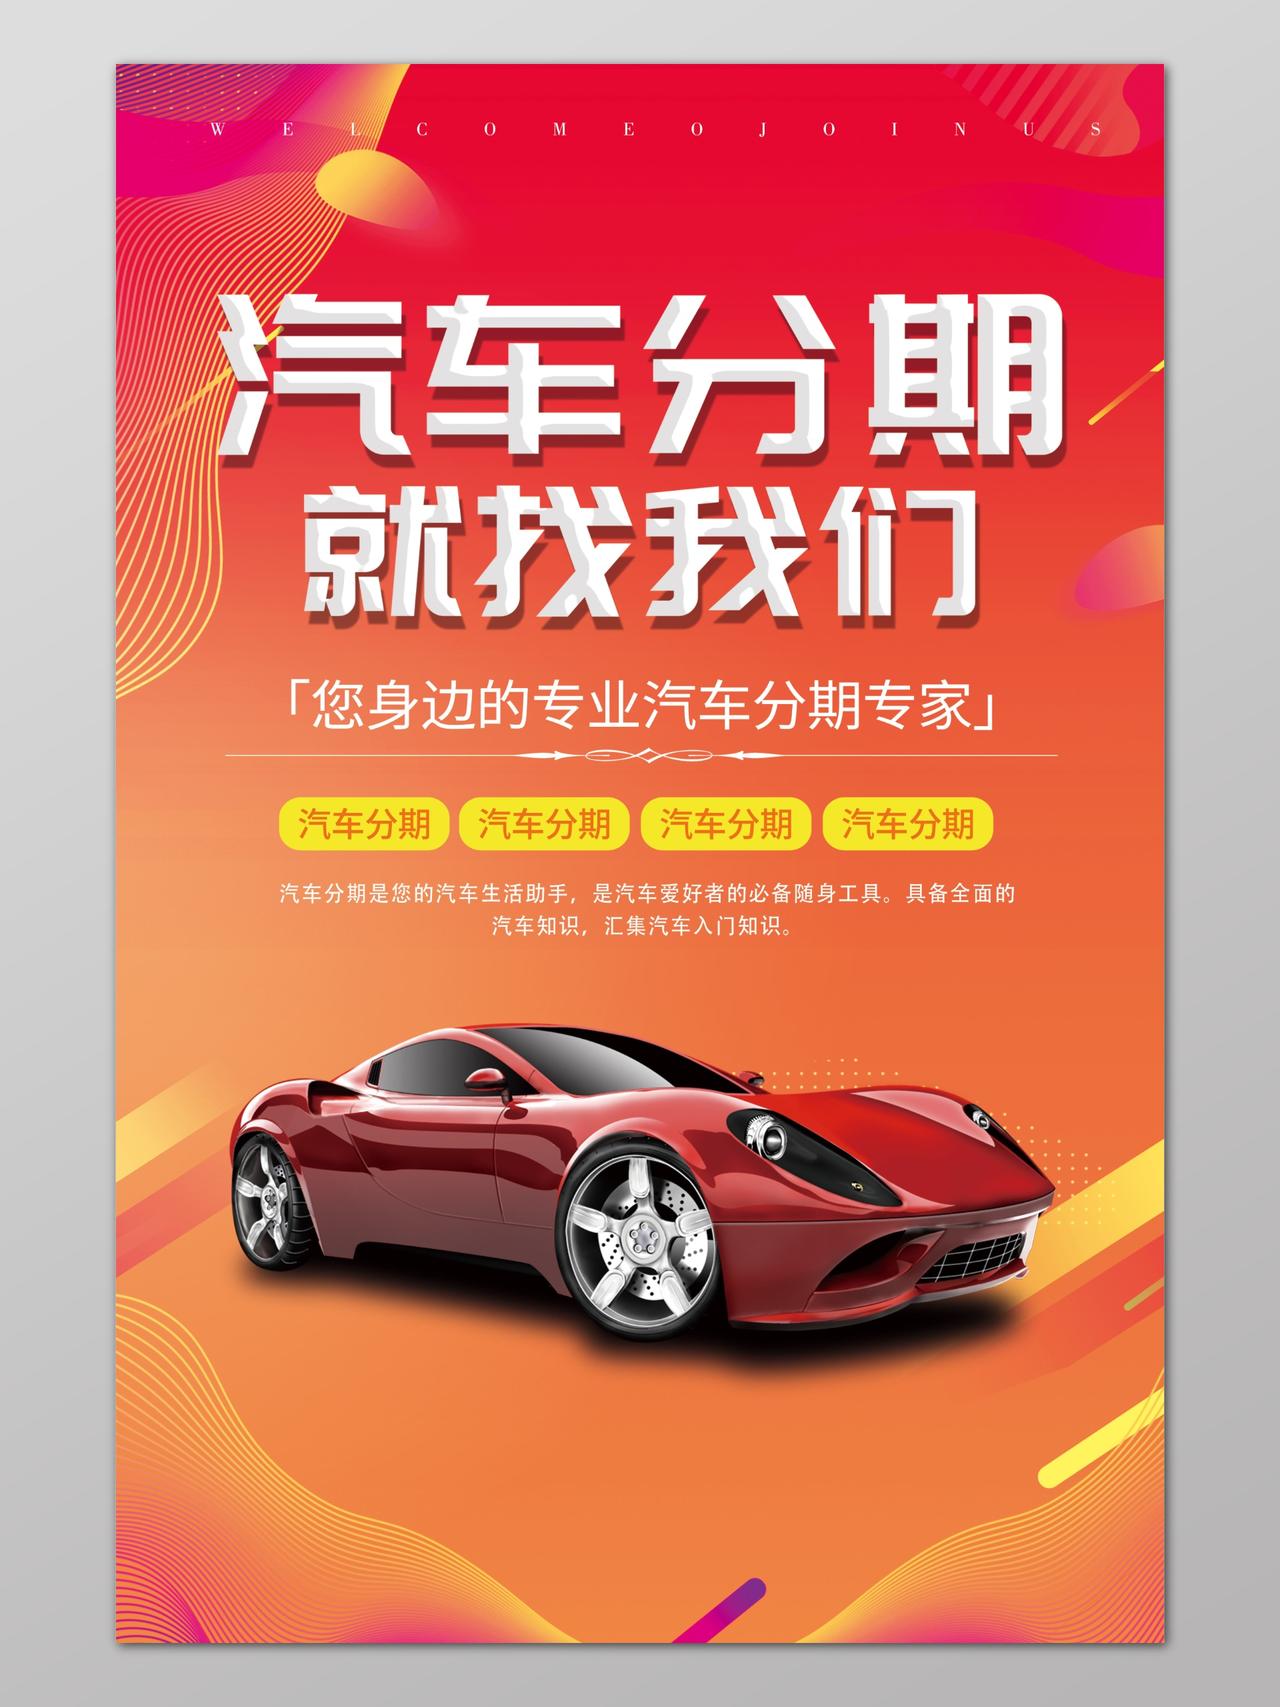 分期购车汽车促销优惠红色喜庆海报模板